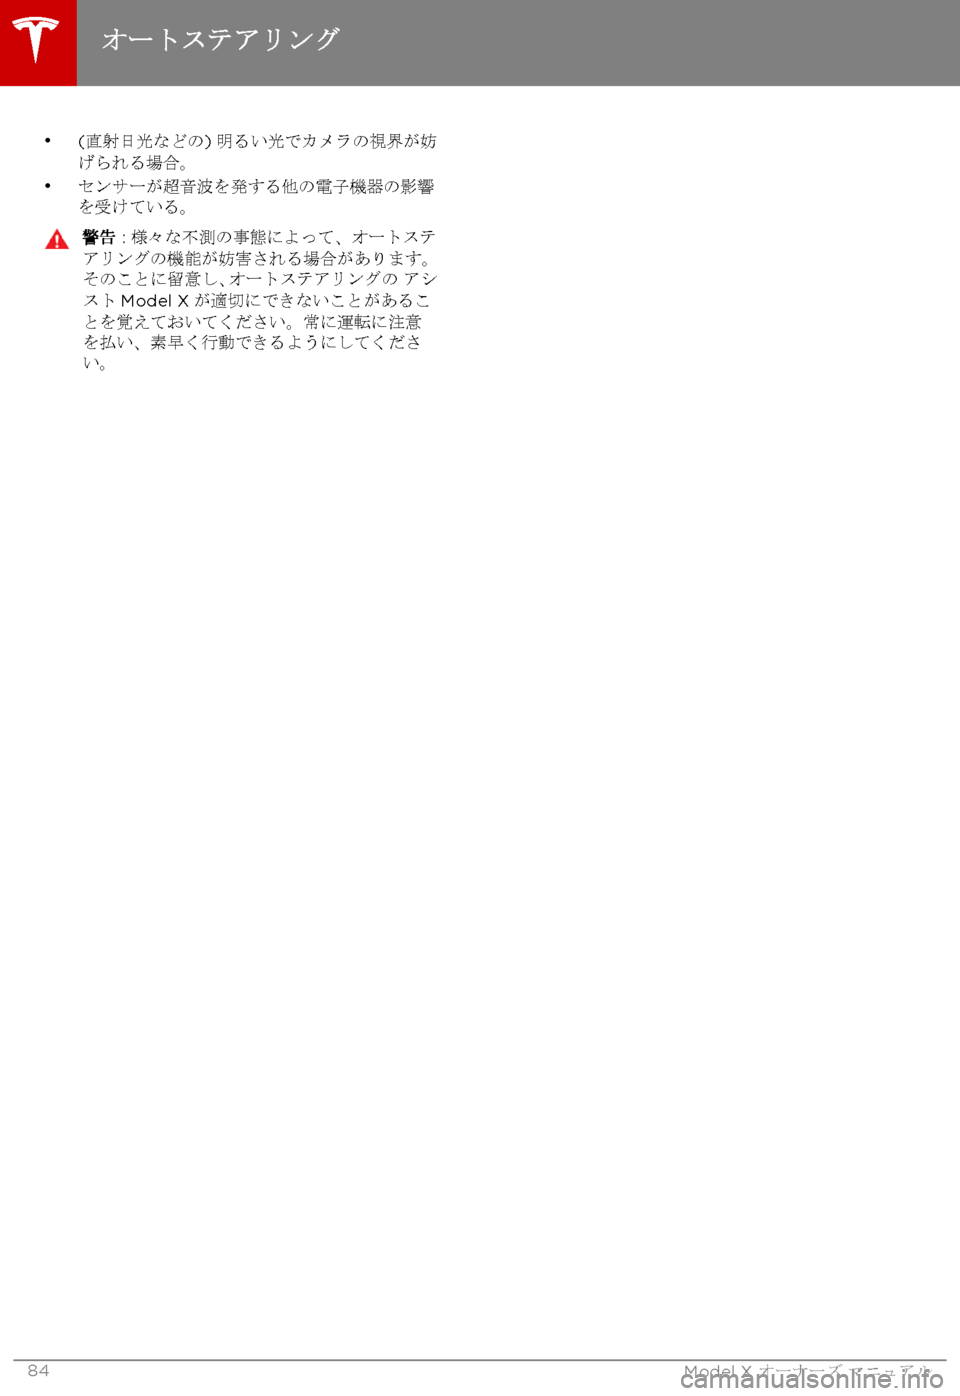 TESLA MODEL X 2017  取扱説明書 (in Japanese) 